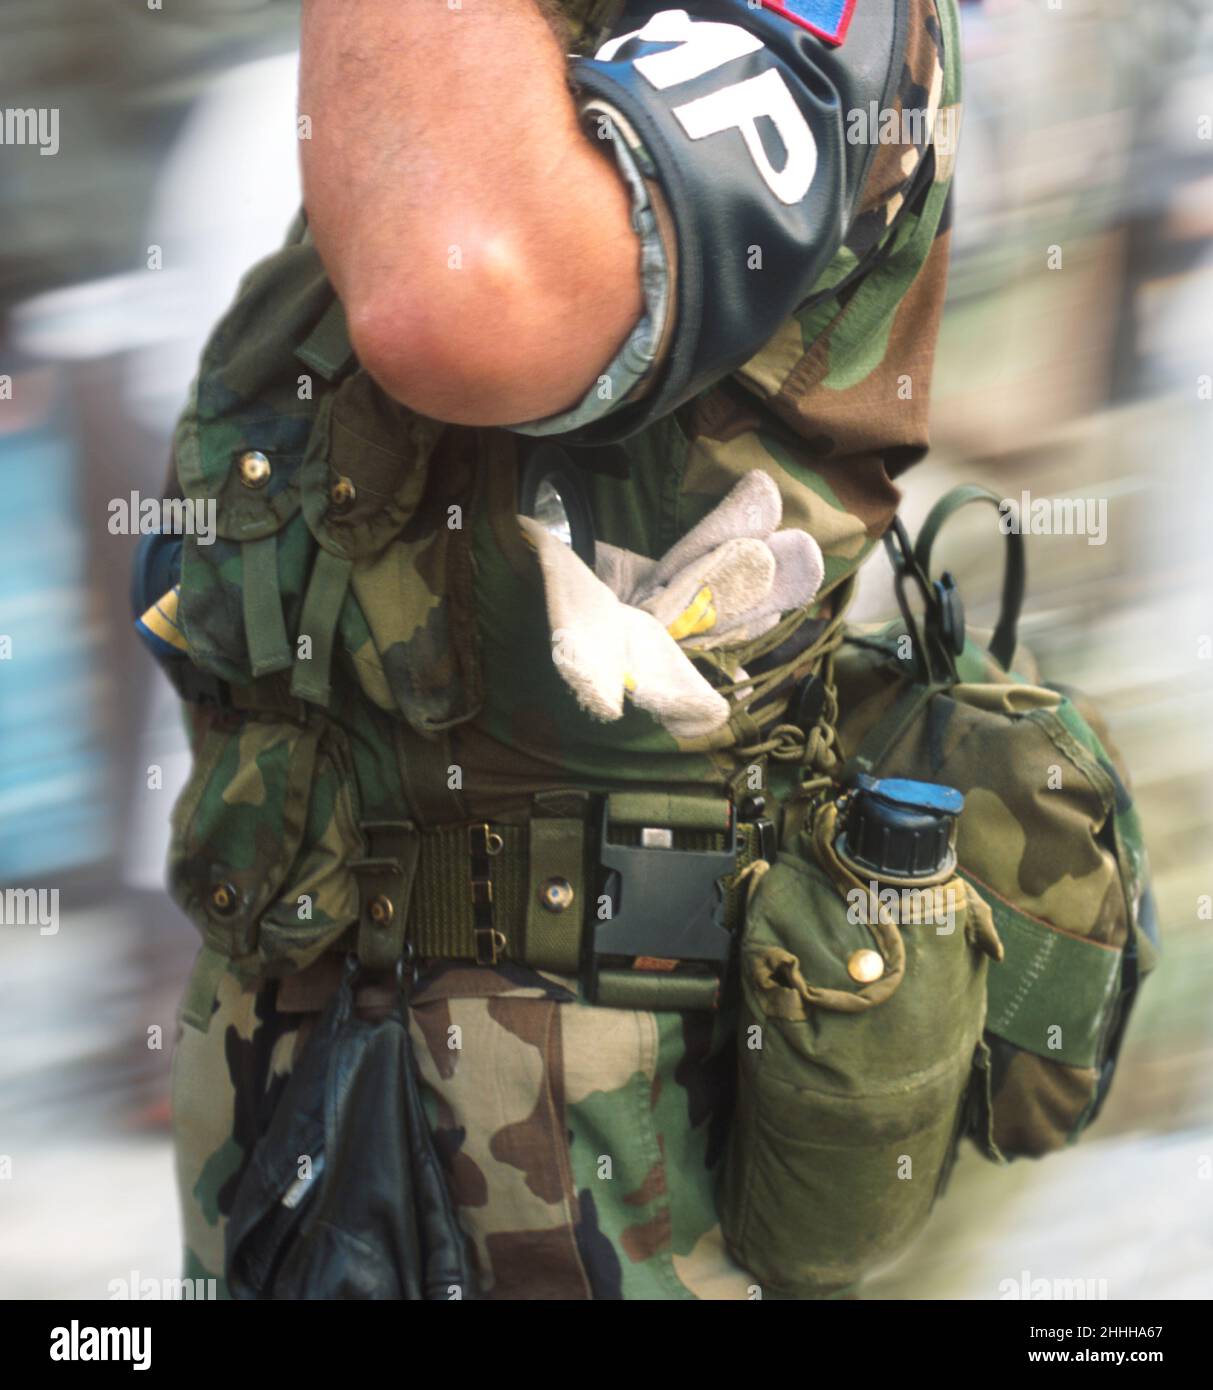 Salinisation MP. Brassard de la police militaire de la Garde nationale américaine. Soldat debout à l'attention, prêt au combat et en service dans des vêtements de camouflage. Banque D'Images